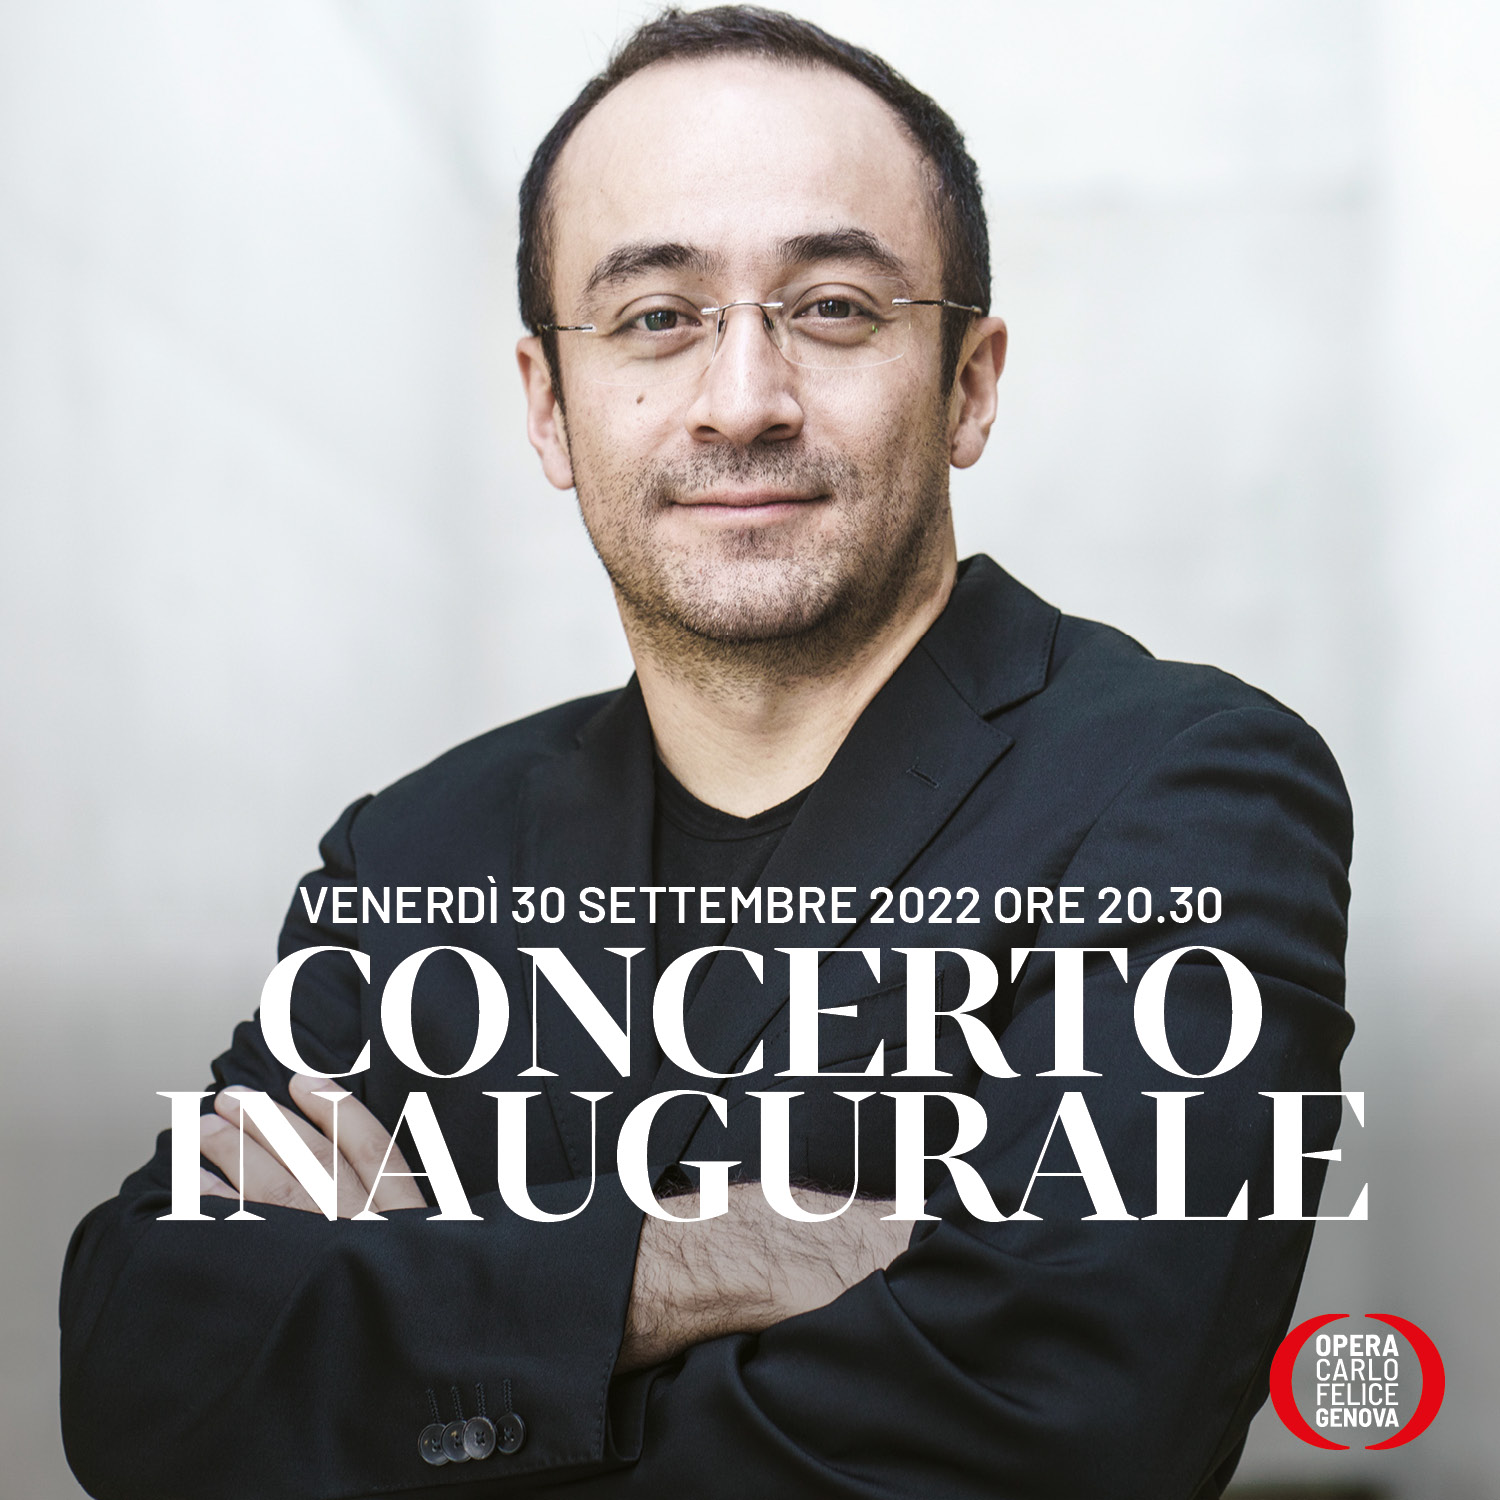 Opera Carlo Felice concerto inaugurale